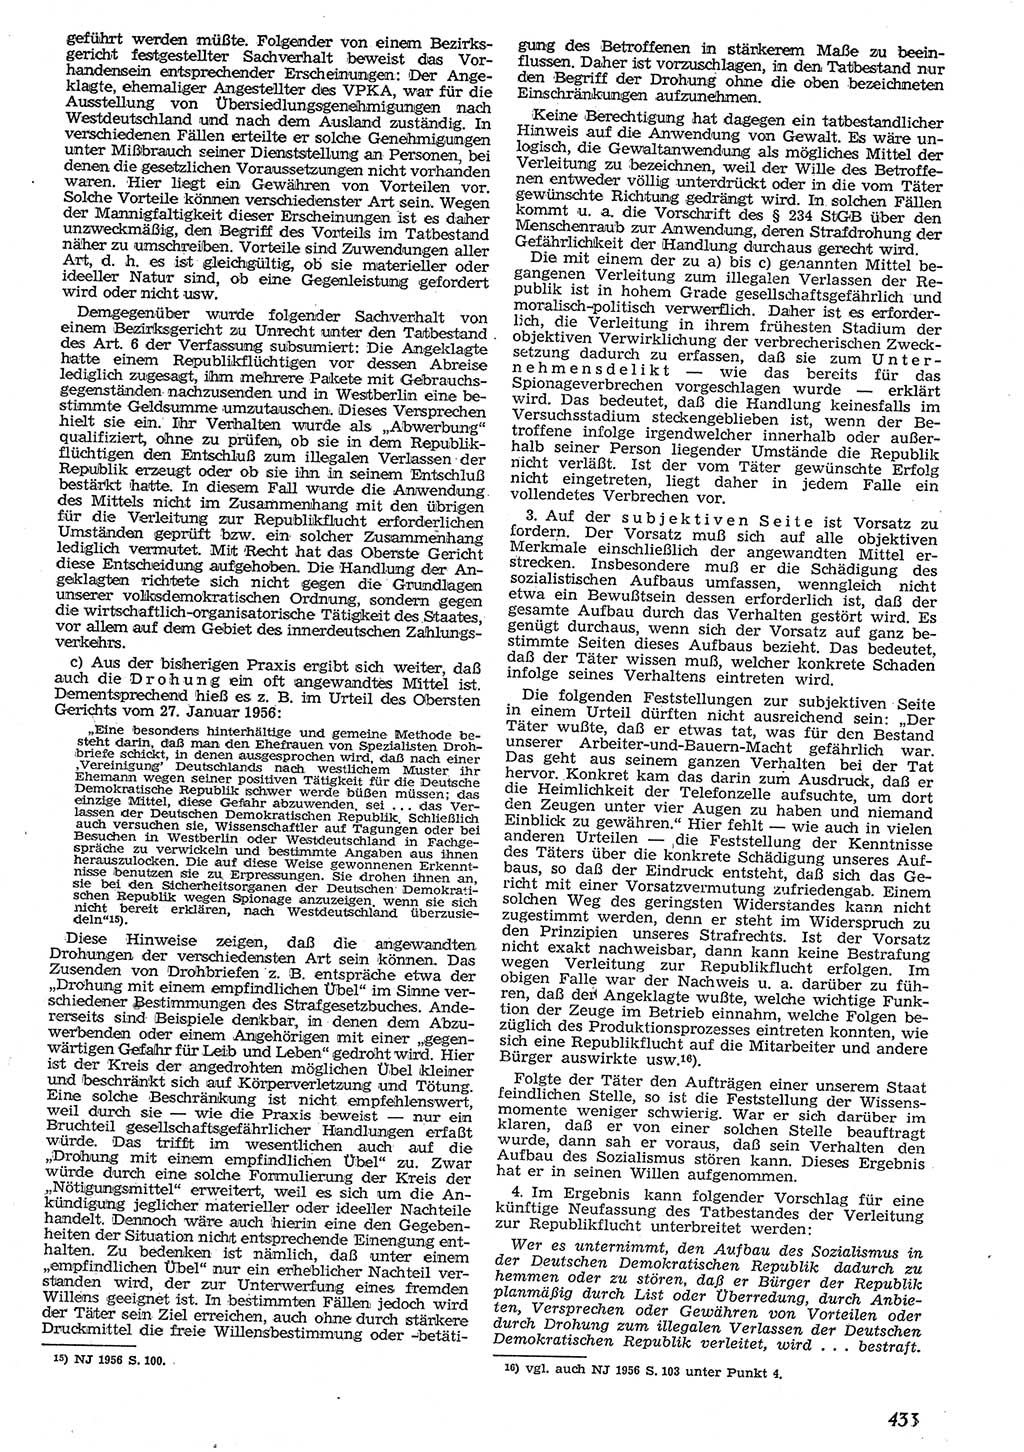 Neue Justiz (NJ), Zeitschrift für Recht und Rechtswissenschaft [Deutsche Demokratische Republik (DDR)], 10. Jahrgang 1956, Seite 433 (NJ DDR 1956, S. 433)